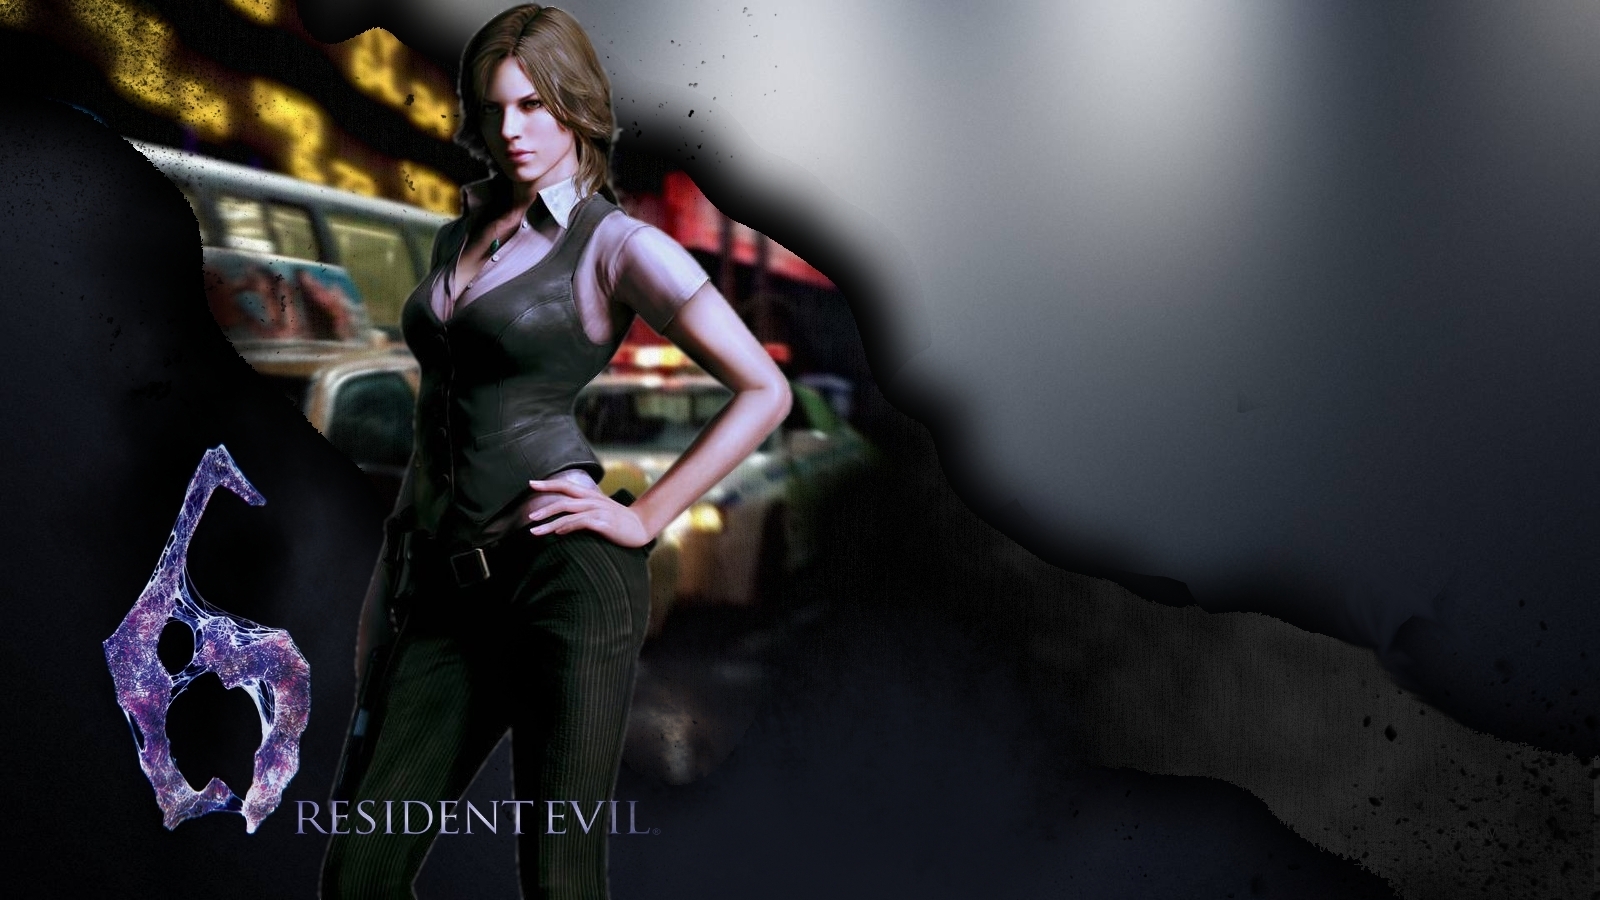 Rendered Bits Resident Evil Wallpaper